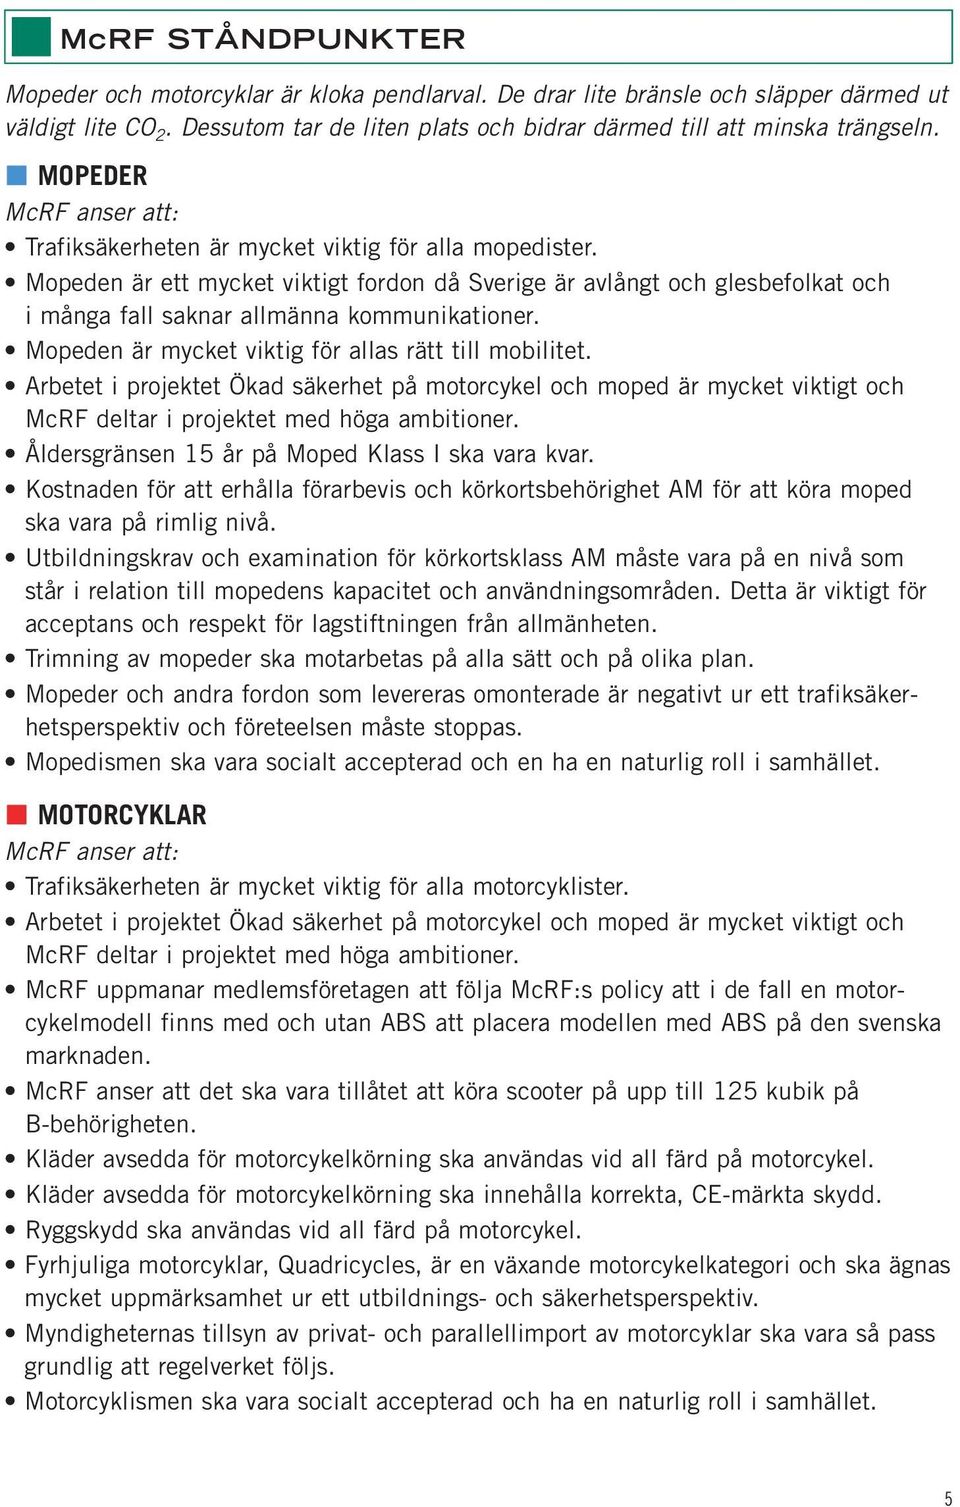 Mopeden är ett mycket viktigt fordon då Sverige är avlångt och glesbefolkat och i många fall saknar allmänna kommunikationer. Mopeden är mycket viktig för allas rätt till mobilitet.